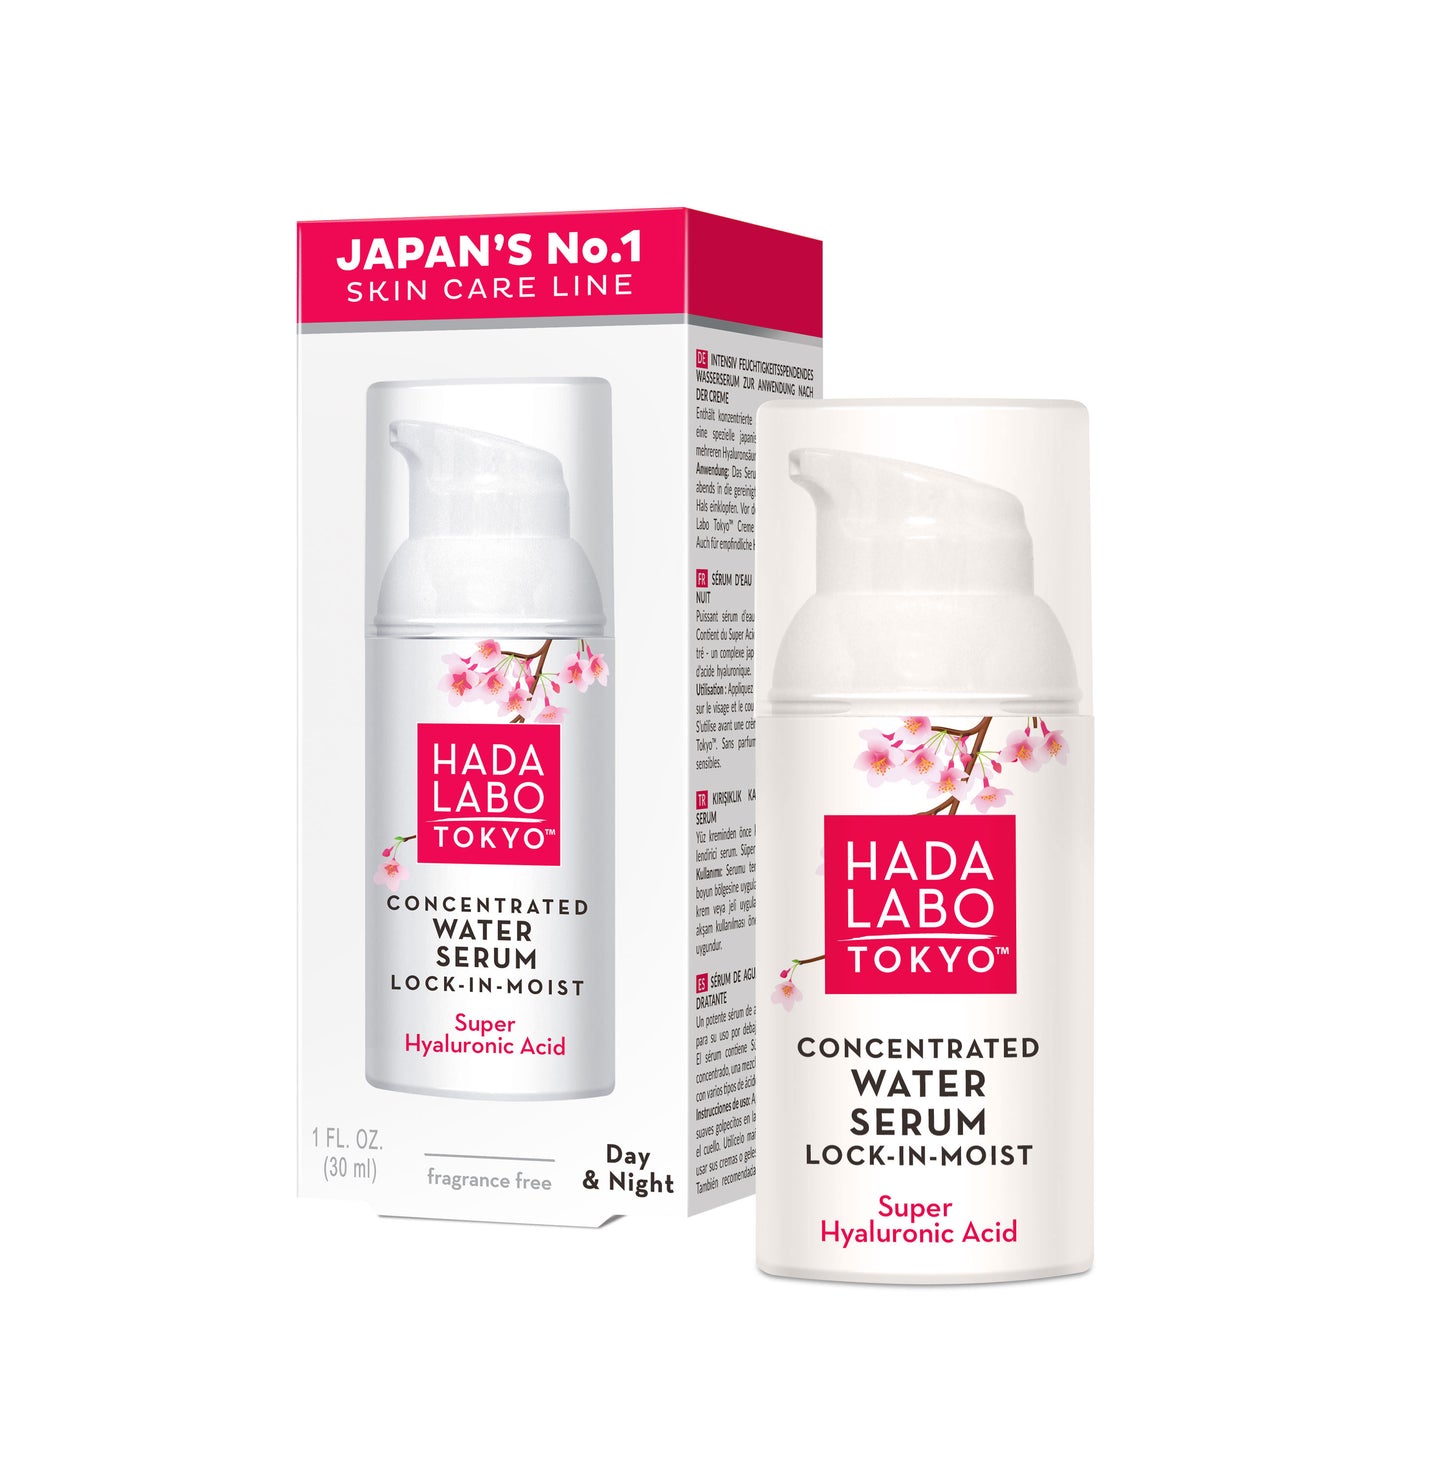 Hada Labo Tokyo™ Sérum concentré Super hydratant Lock-in-moist (conserve l'humidité de la peau)